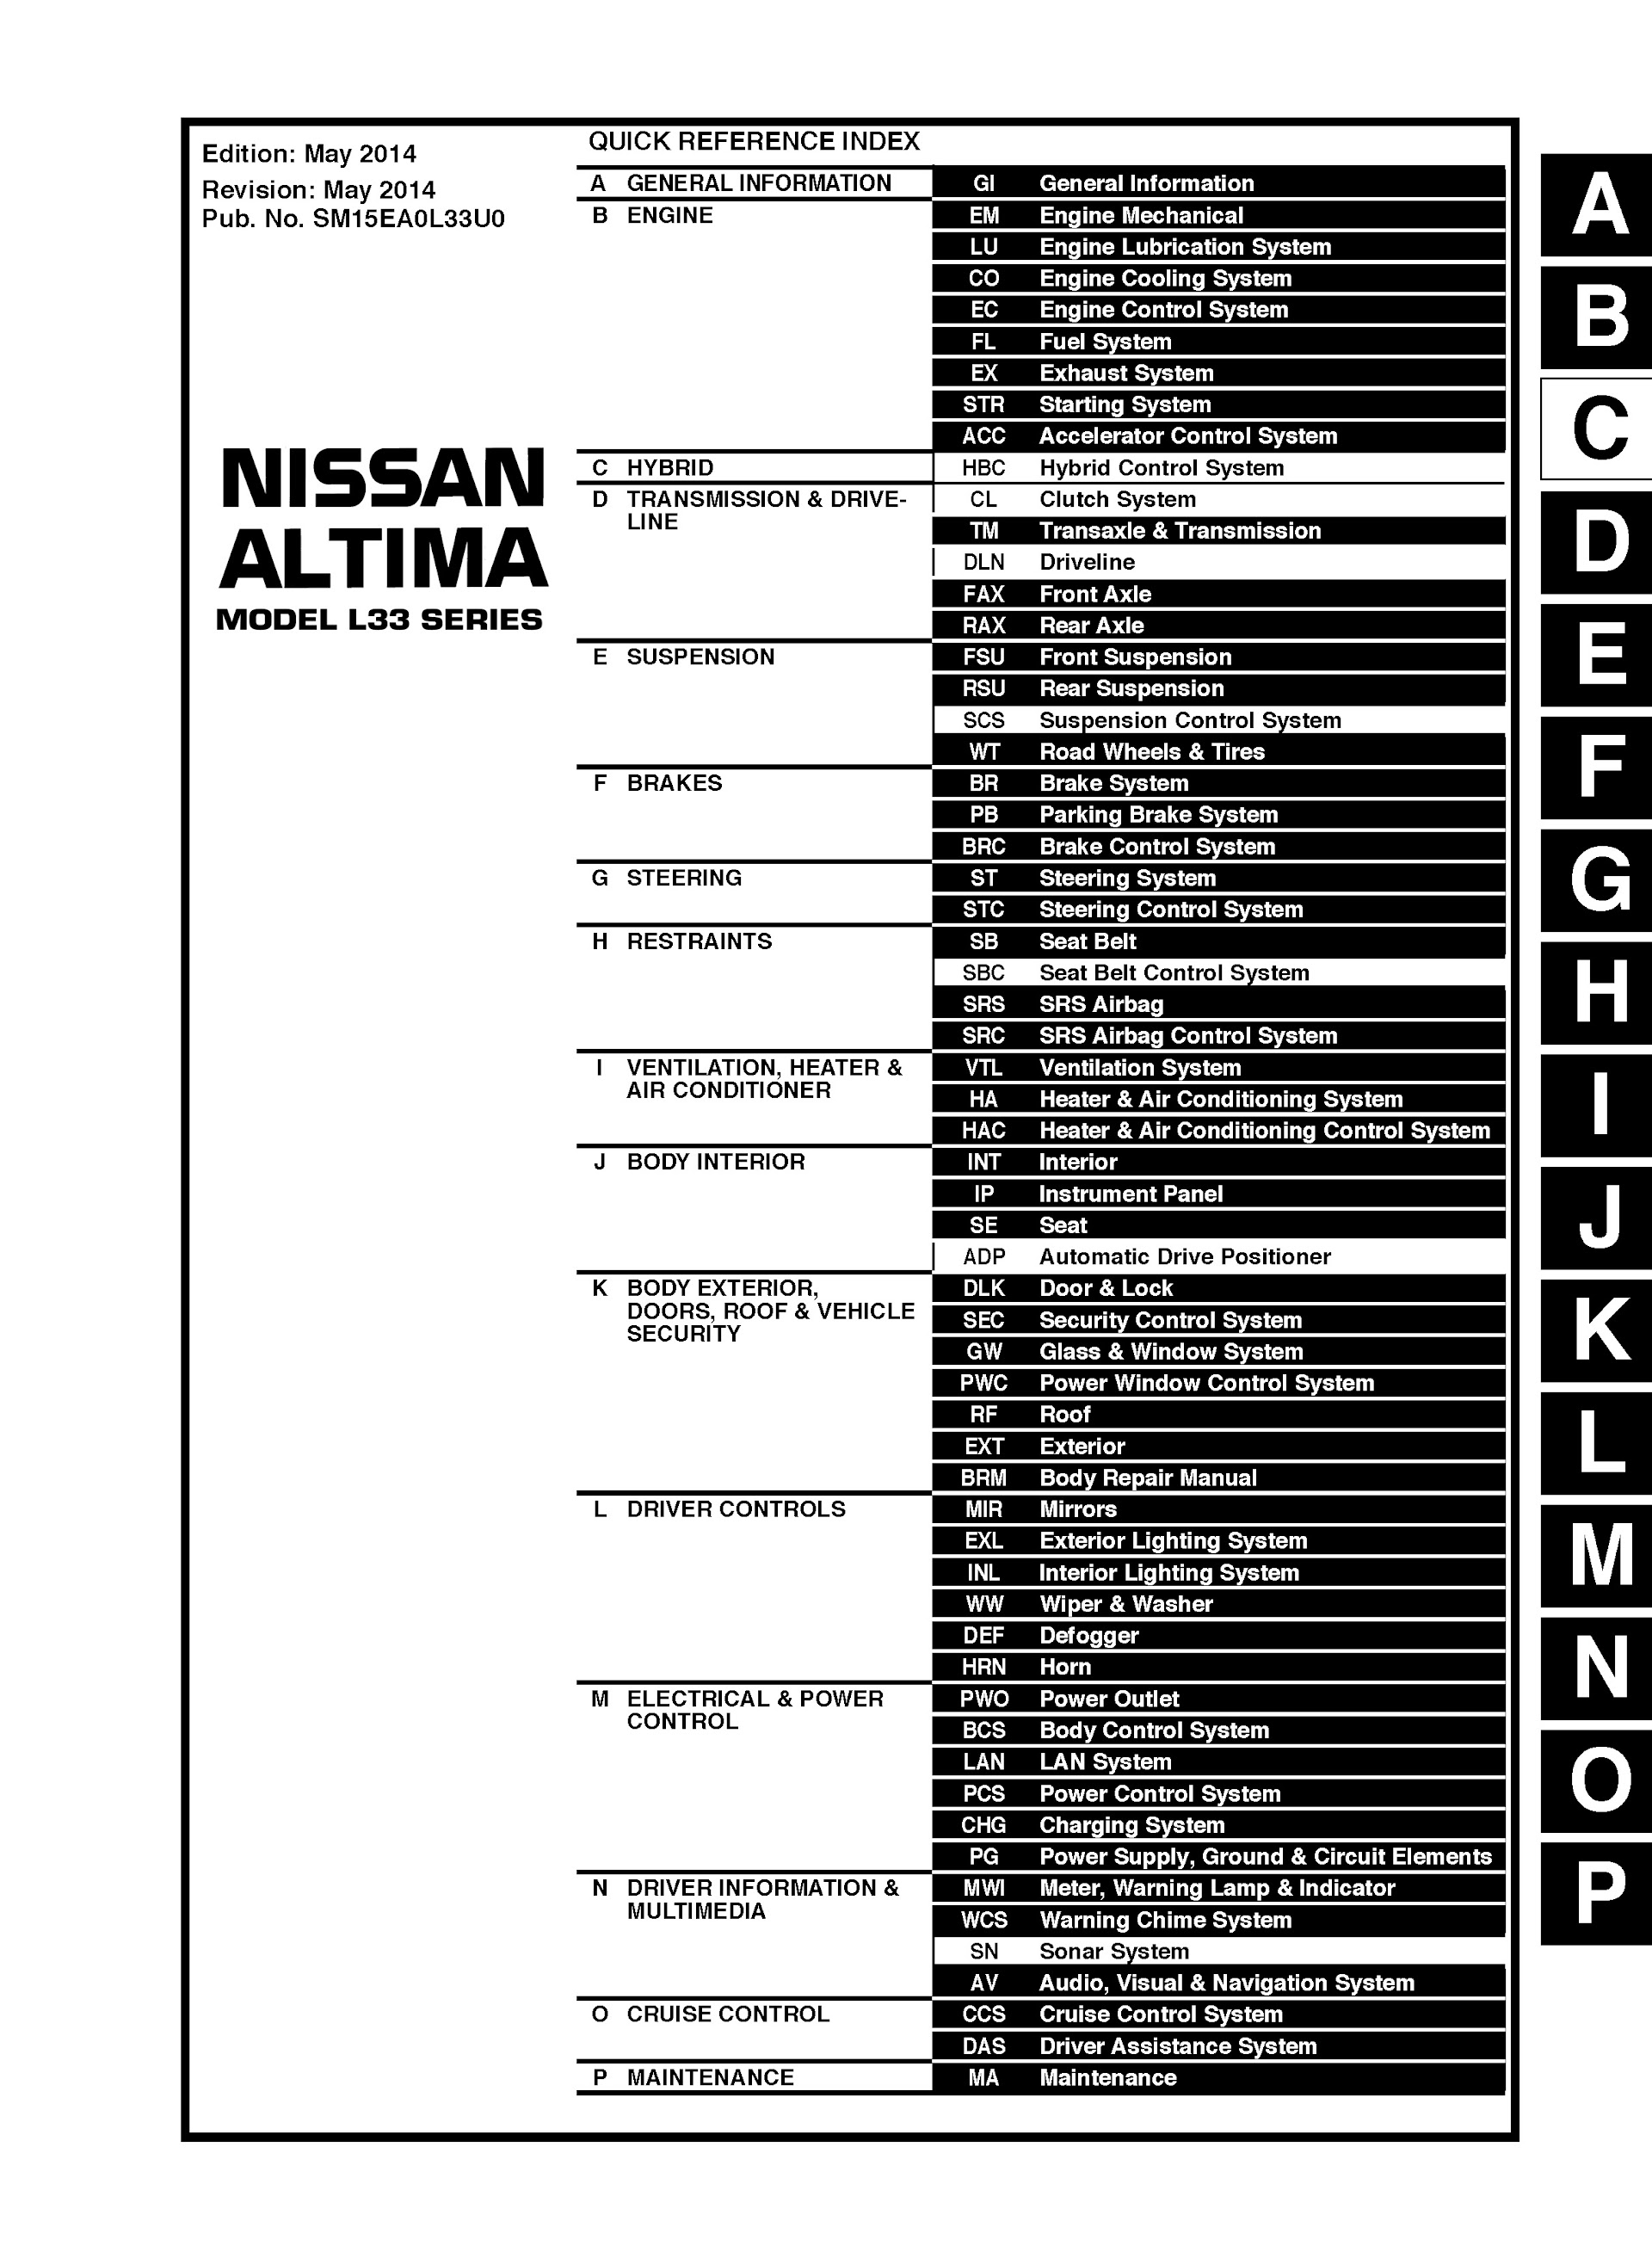 CONTENTS: 2015 Nissan Altima Repair Manual